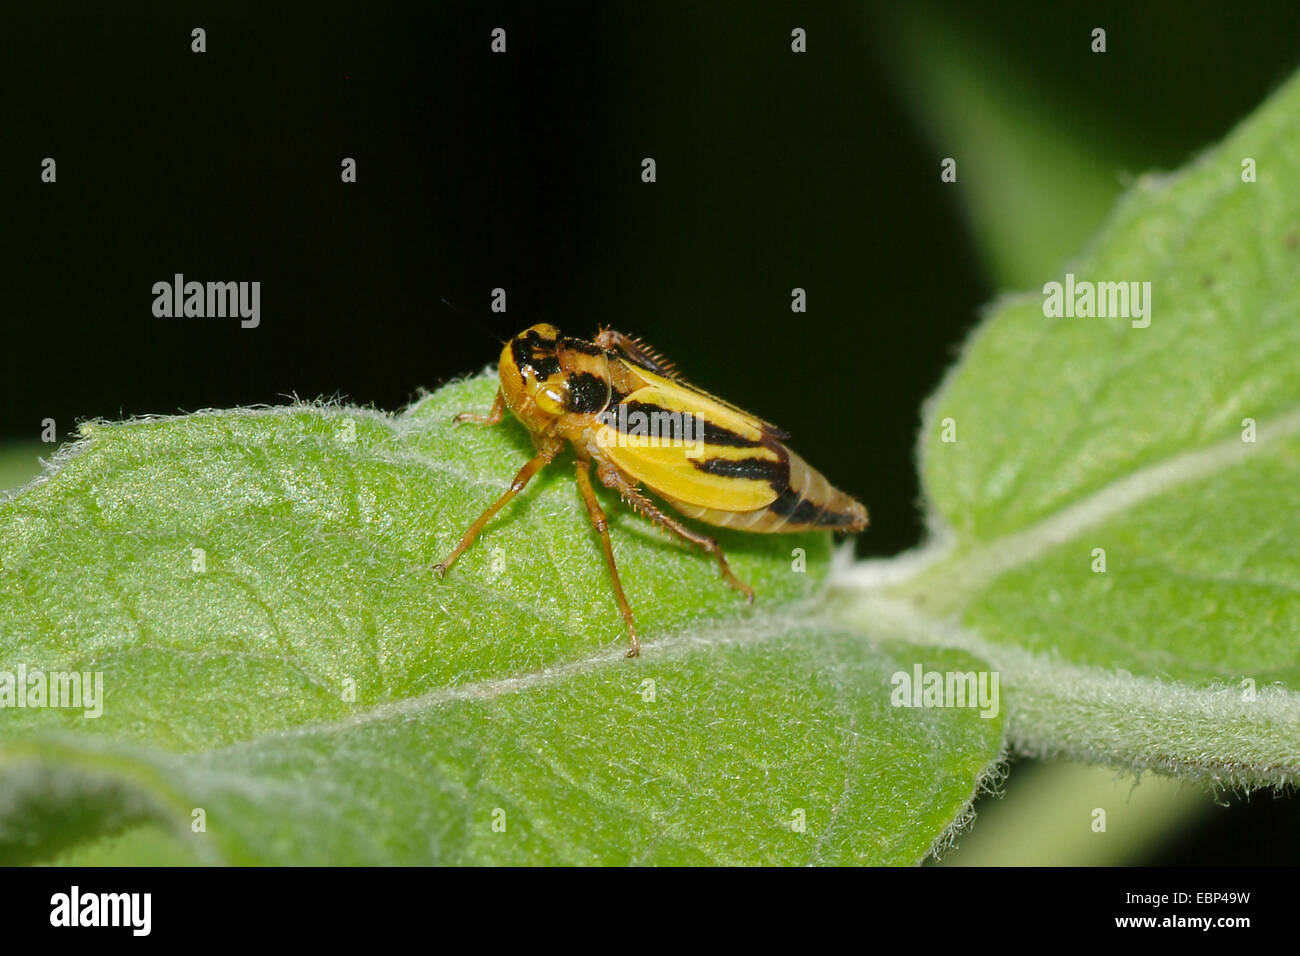 La cicadelle (Evacanthus interruptus hop), sur une feuille, Allemagne Banque D'Images